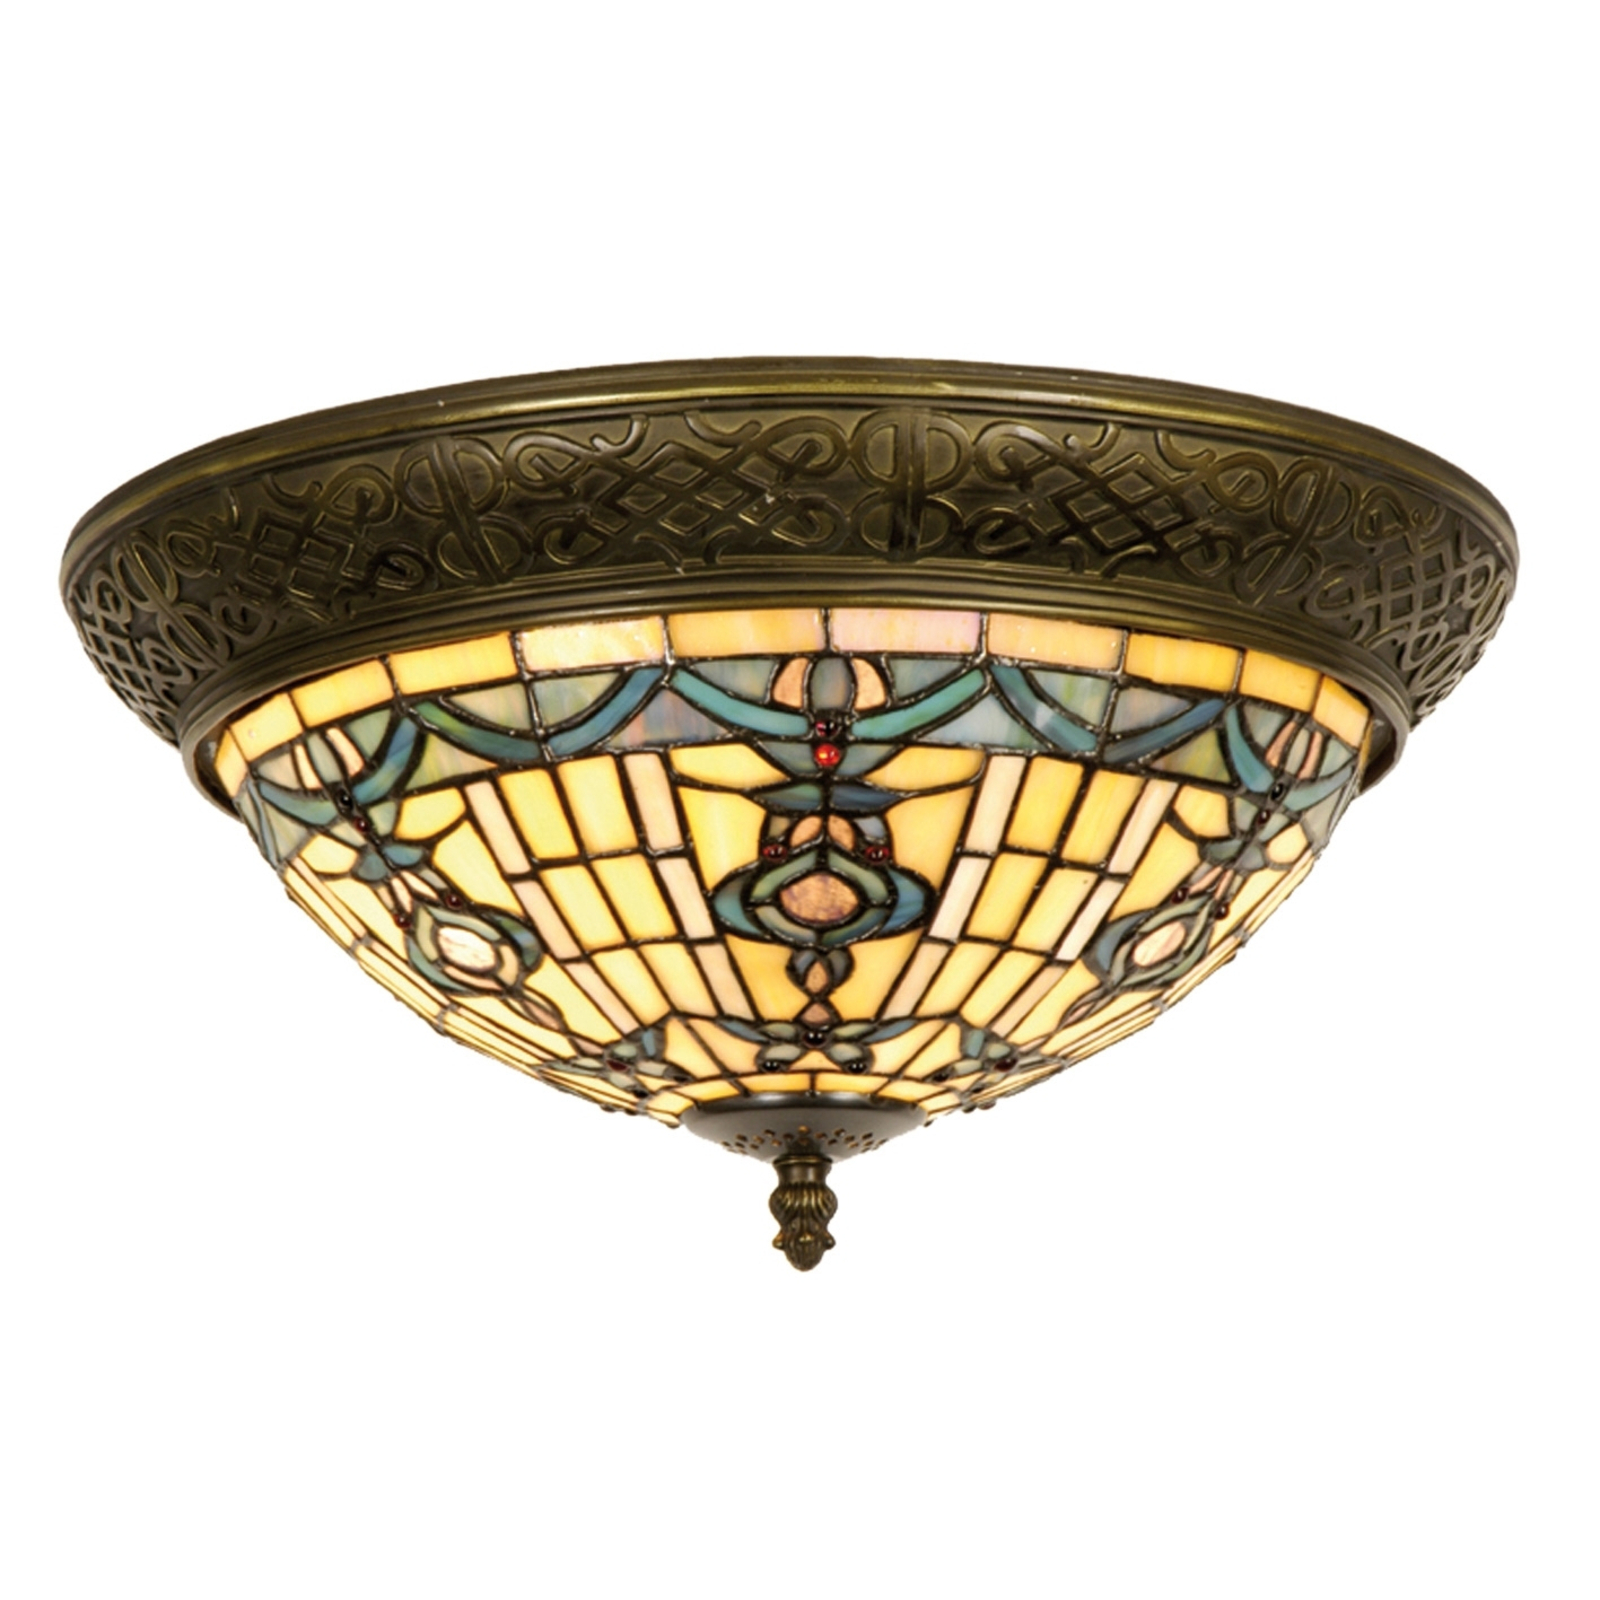 Okrugla stropna svjetiljka Kimberly u Tiffany stilu 38 cm